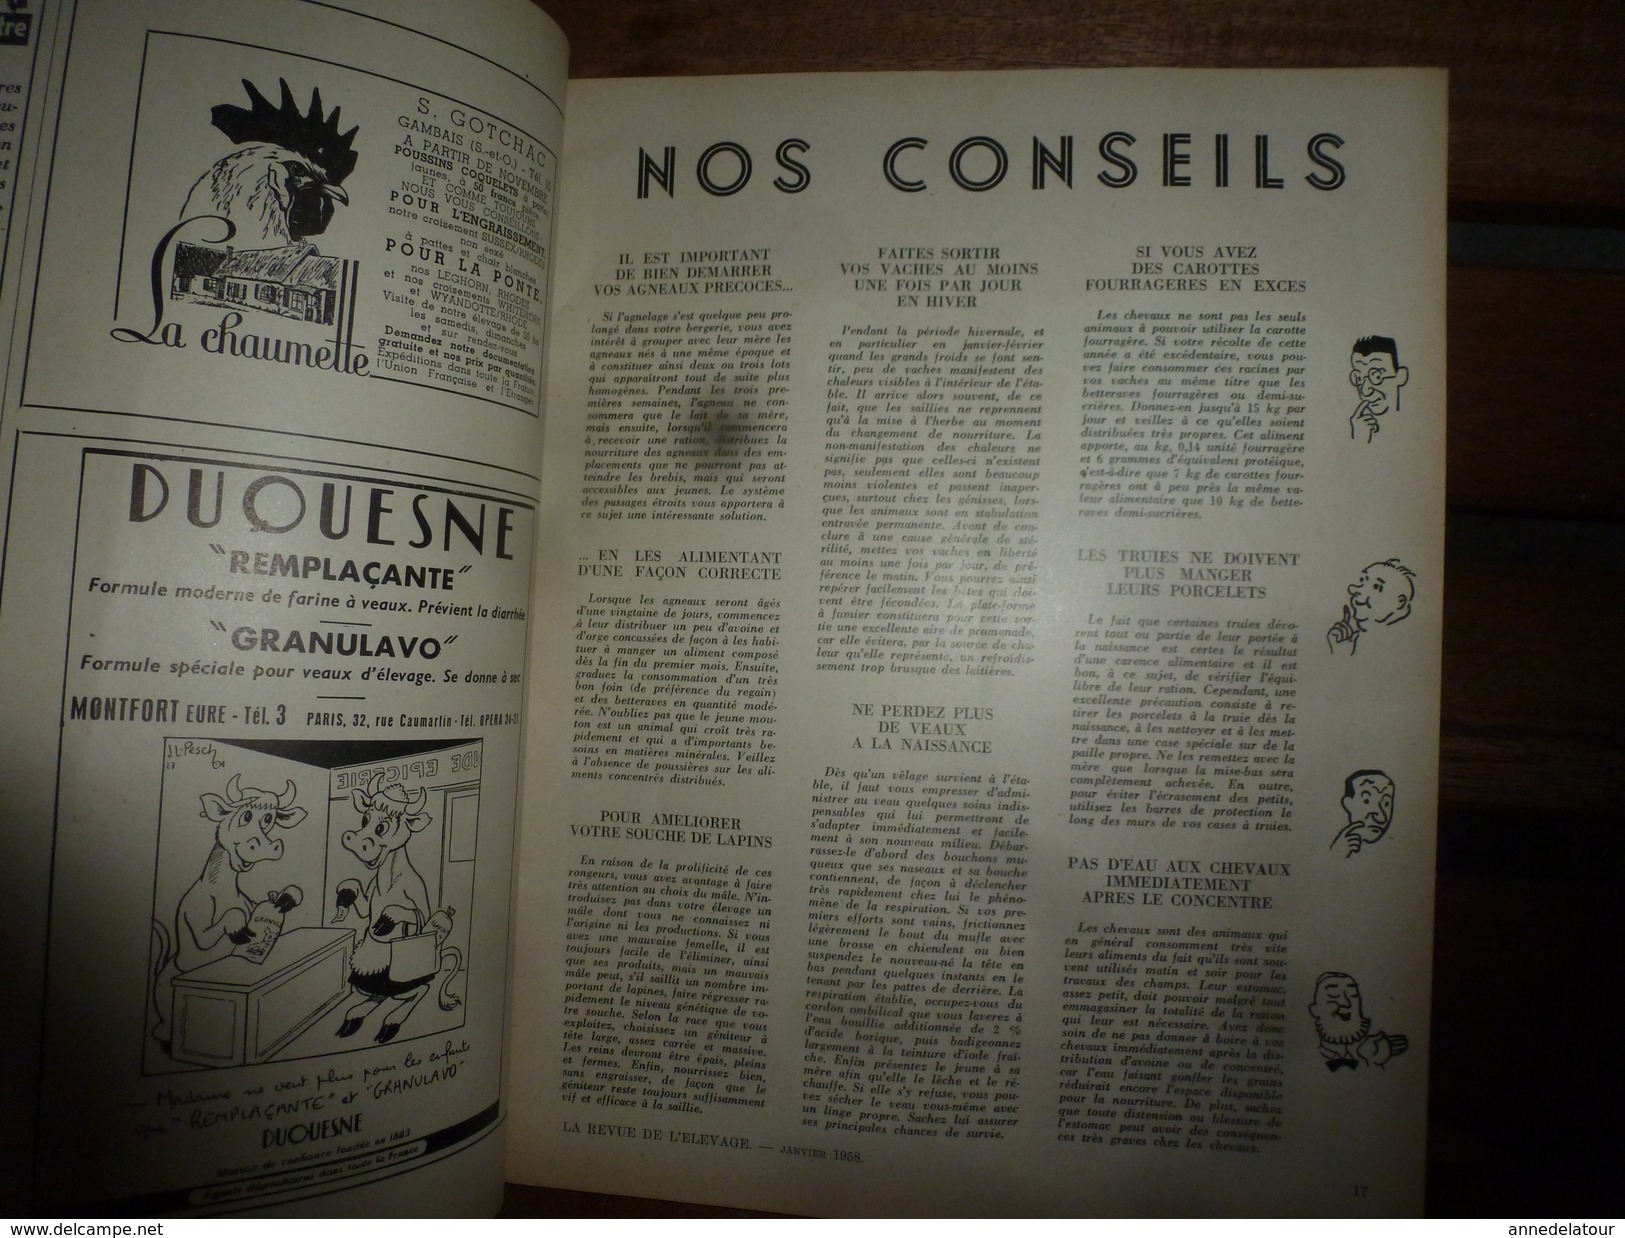 1958 LRDLE  : Le Mouton; Le Porc ; Basse-cour ; Nos Conseils; Etc - Animaux